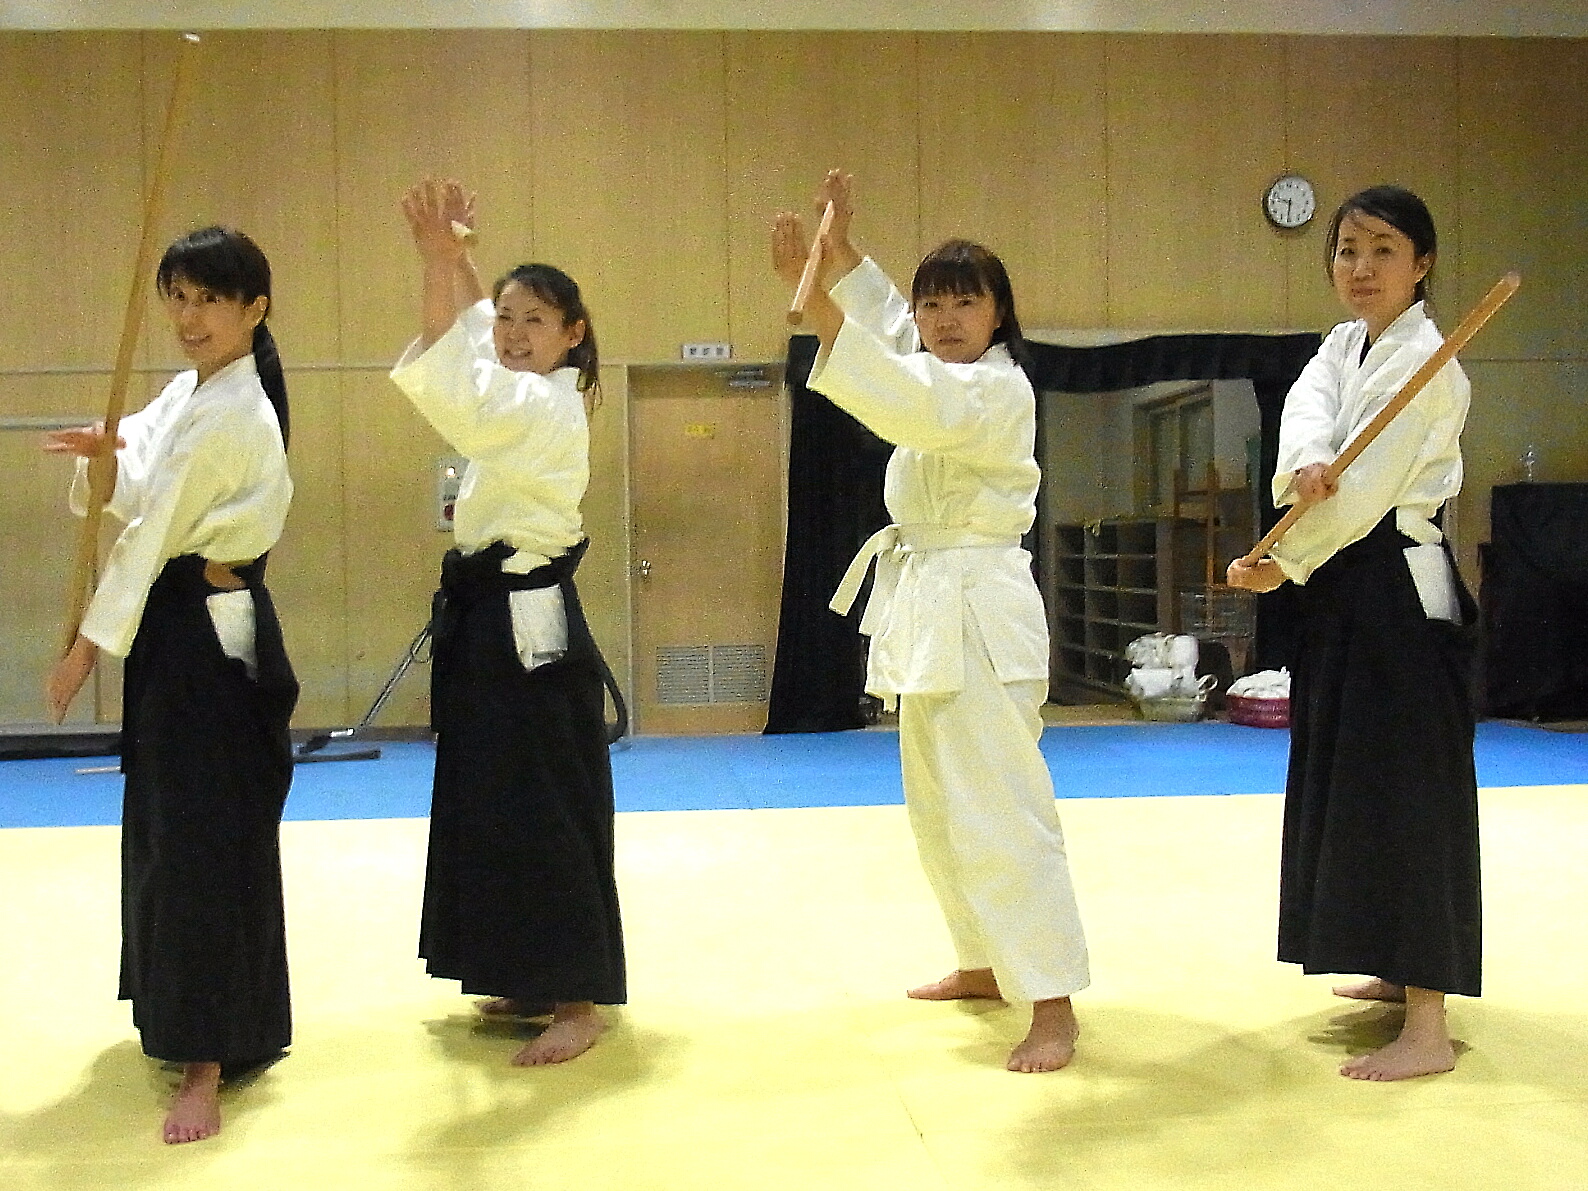 合気杖は躍動感のある美しい武術で会員の女性に人気です 袴姿もとても美しいです 大阪 春風会合気道 Aikidoは大阪市住吉区の三稜中学挌技室で稽古しています